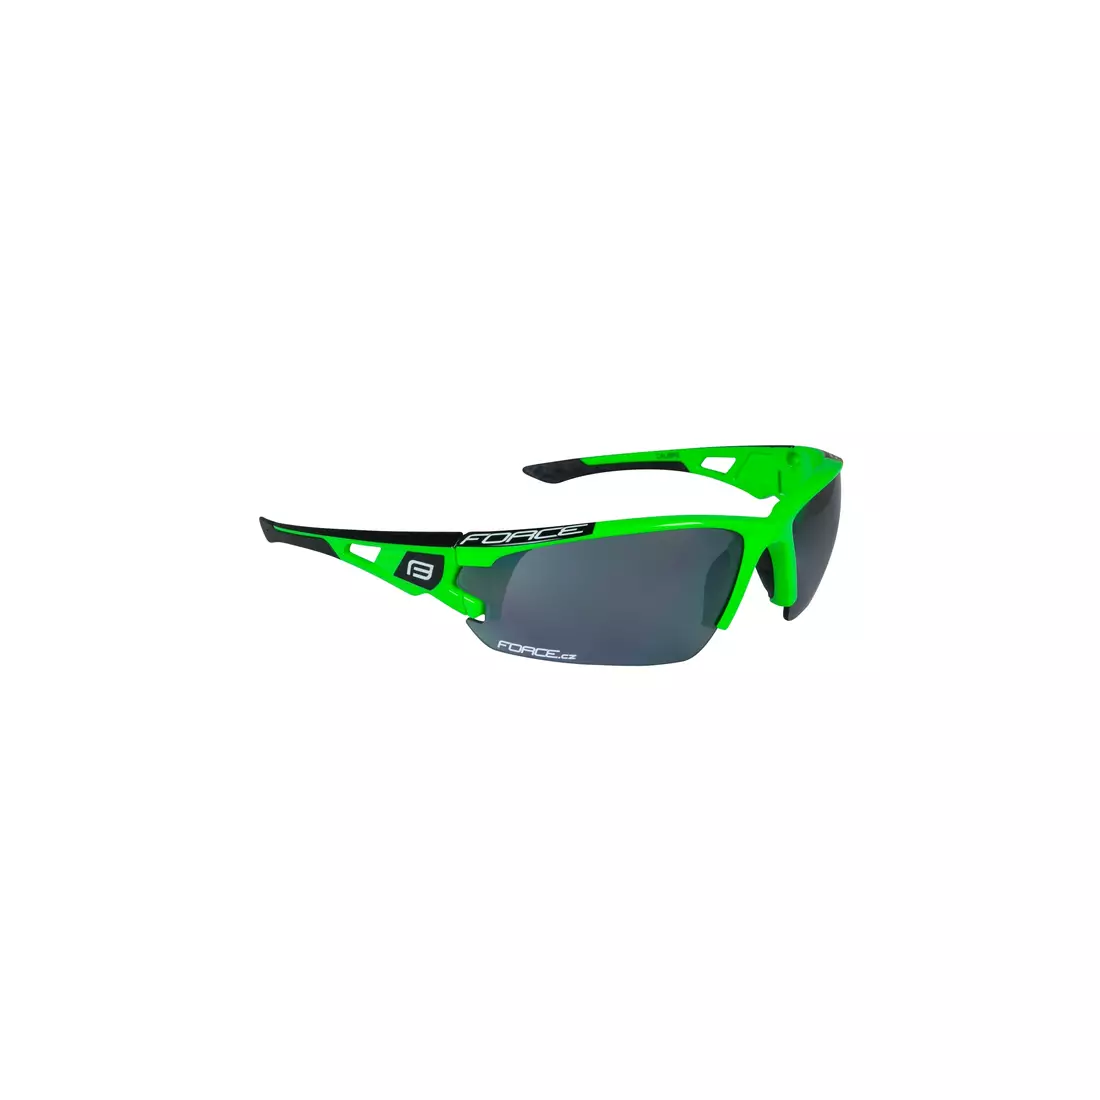 FORCE CALIBRE szemüveg cserélhető lencsével, zöld 91050